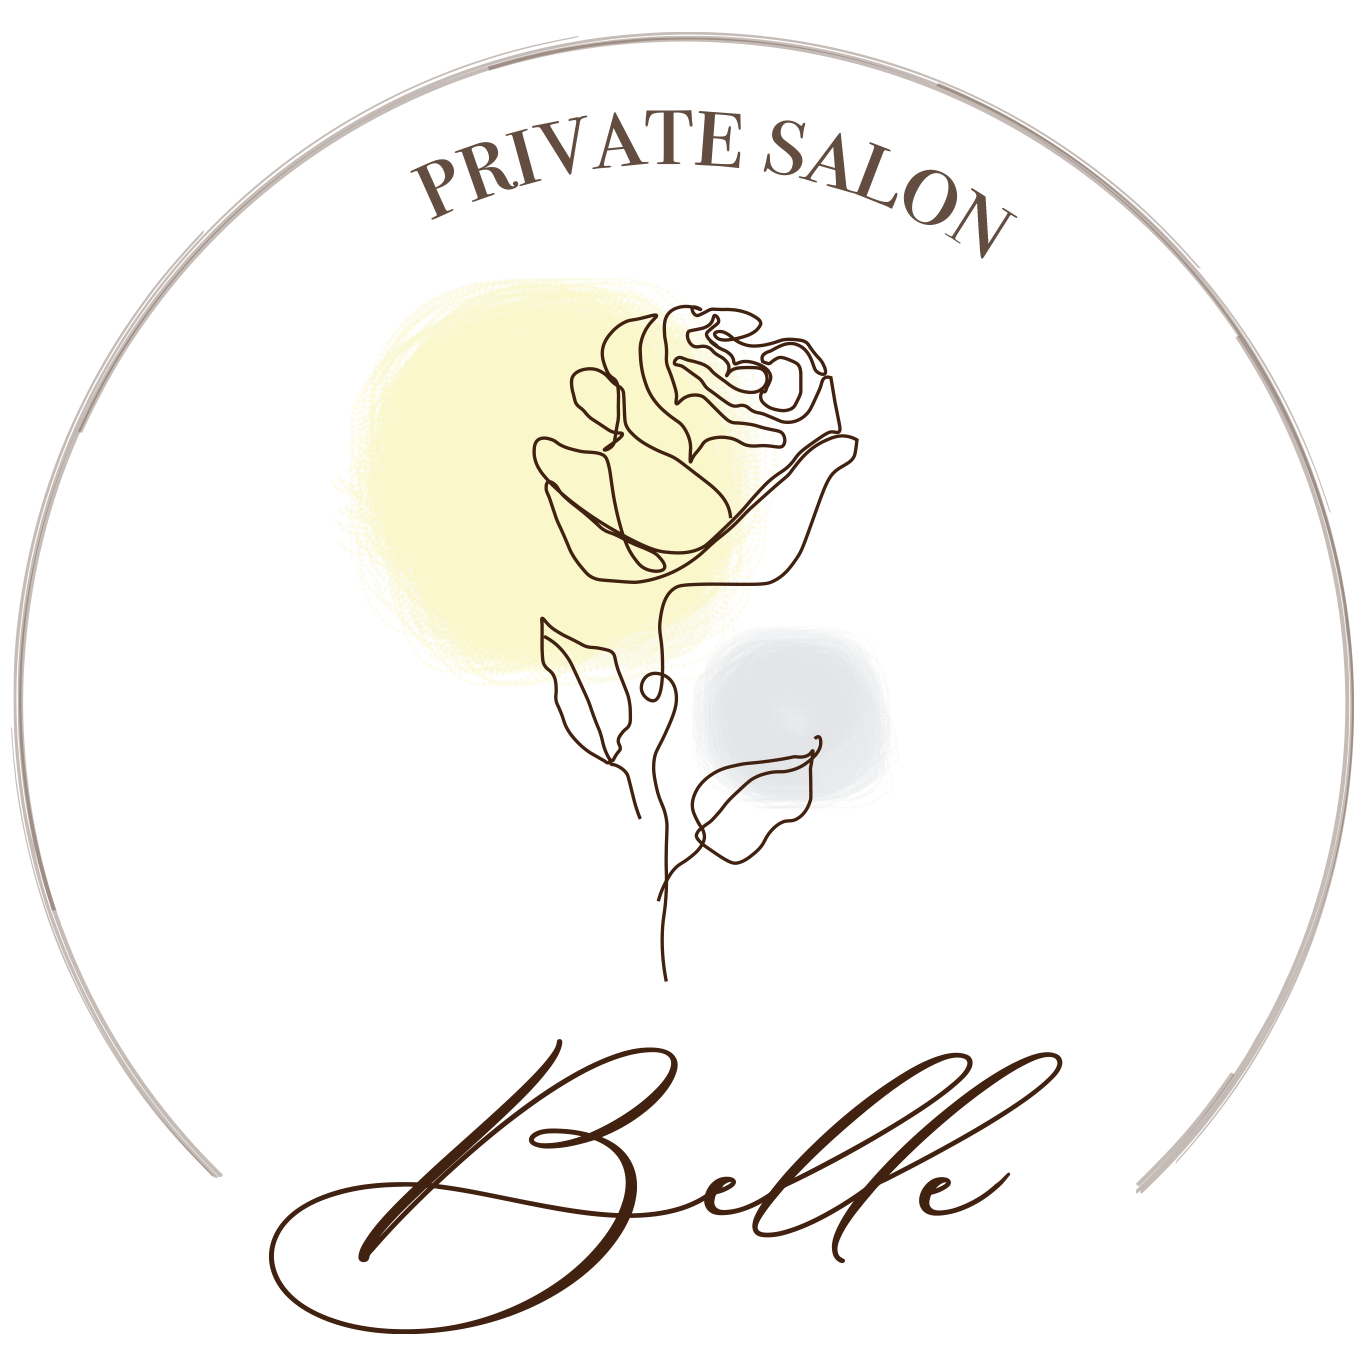 Belle gnav logo